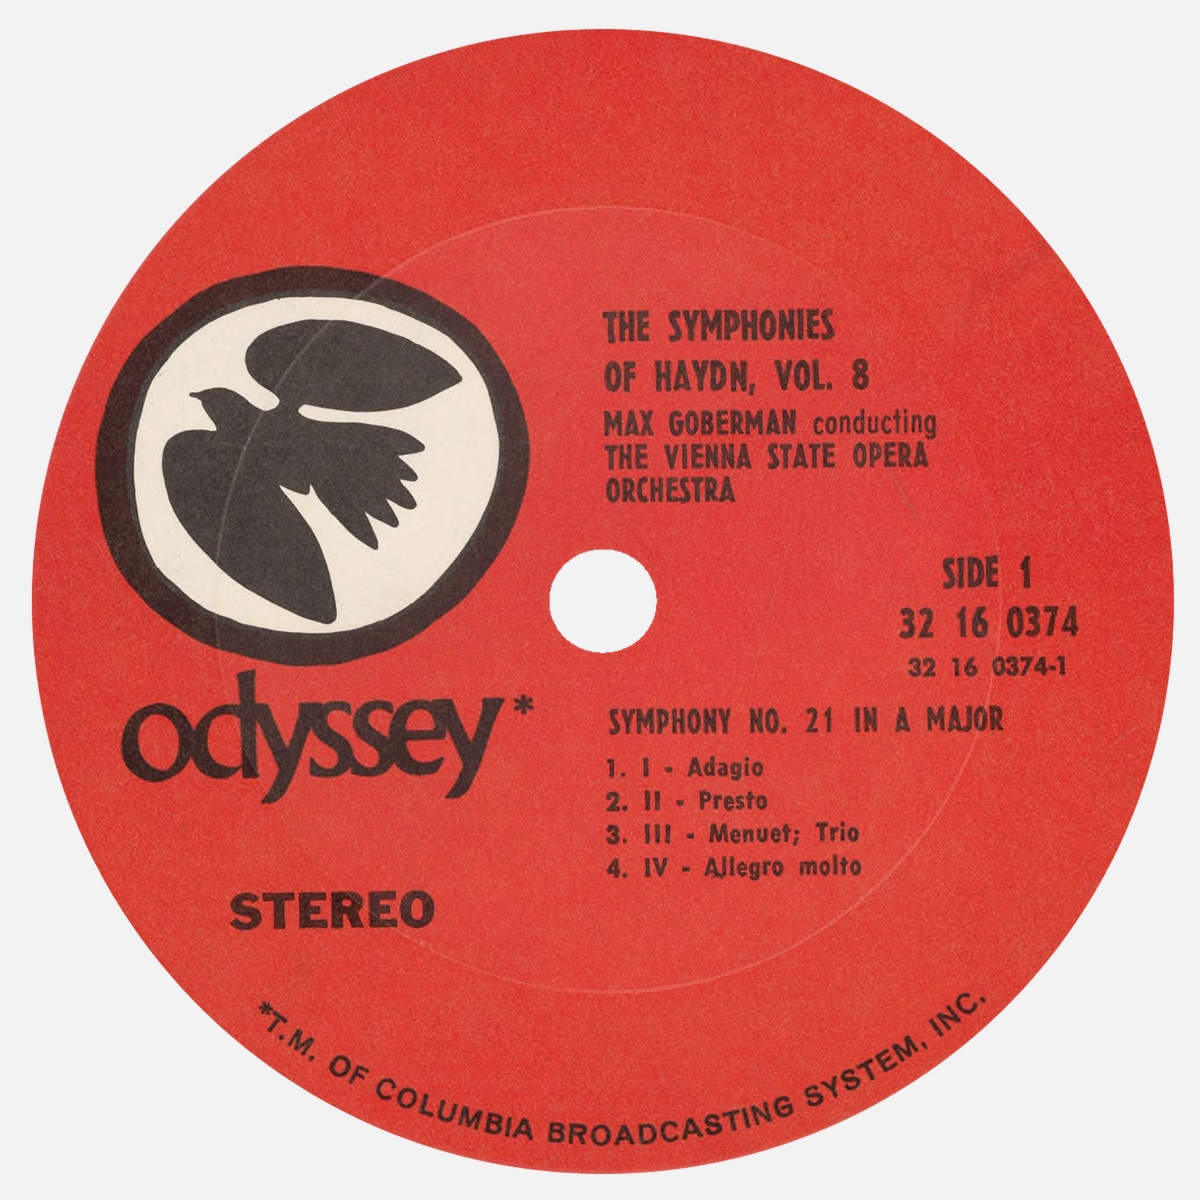 Étiquette recto du disque Columbia ODYSSEY 32 16 0374